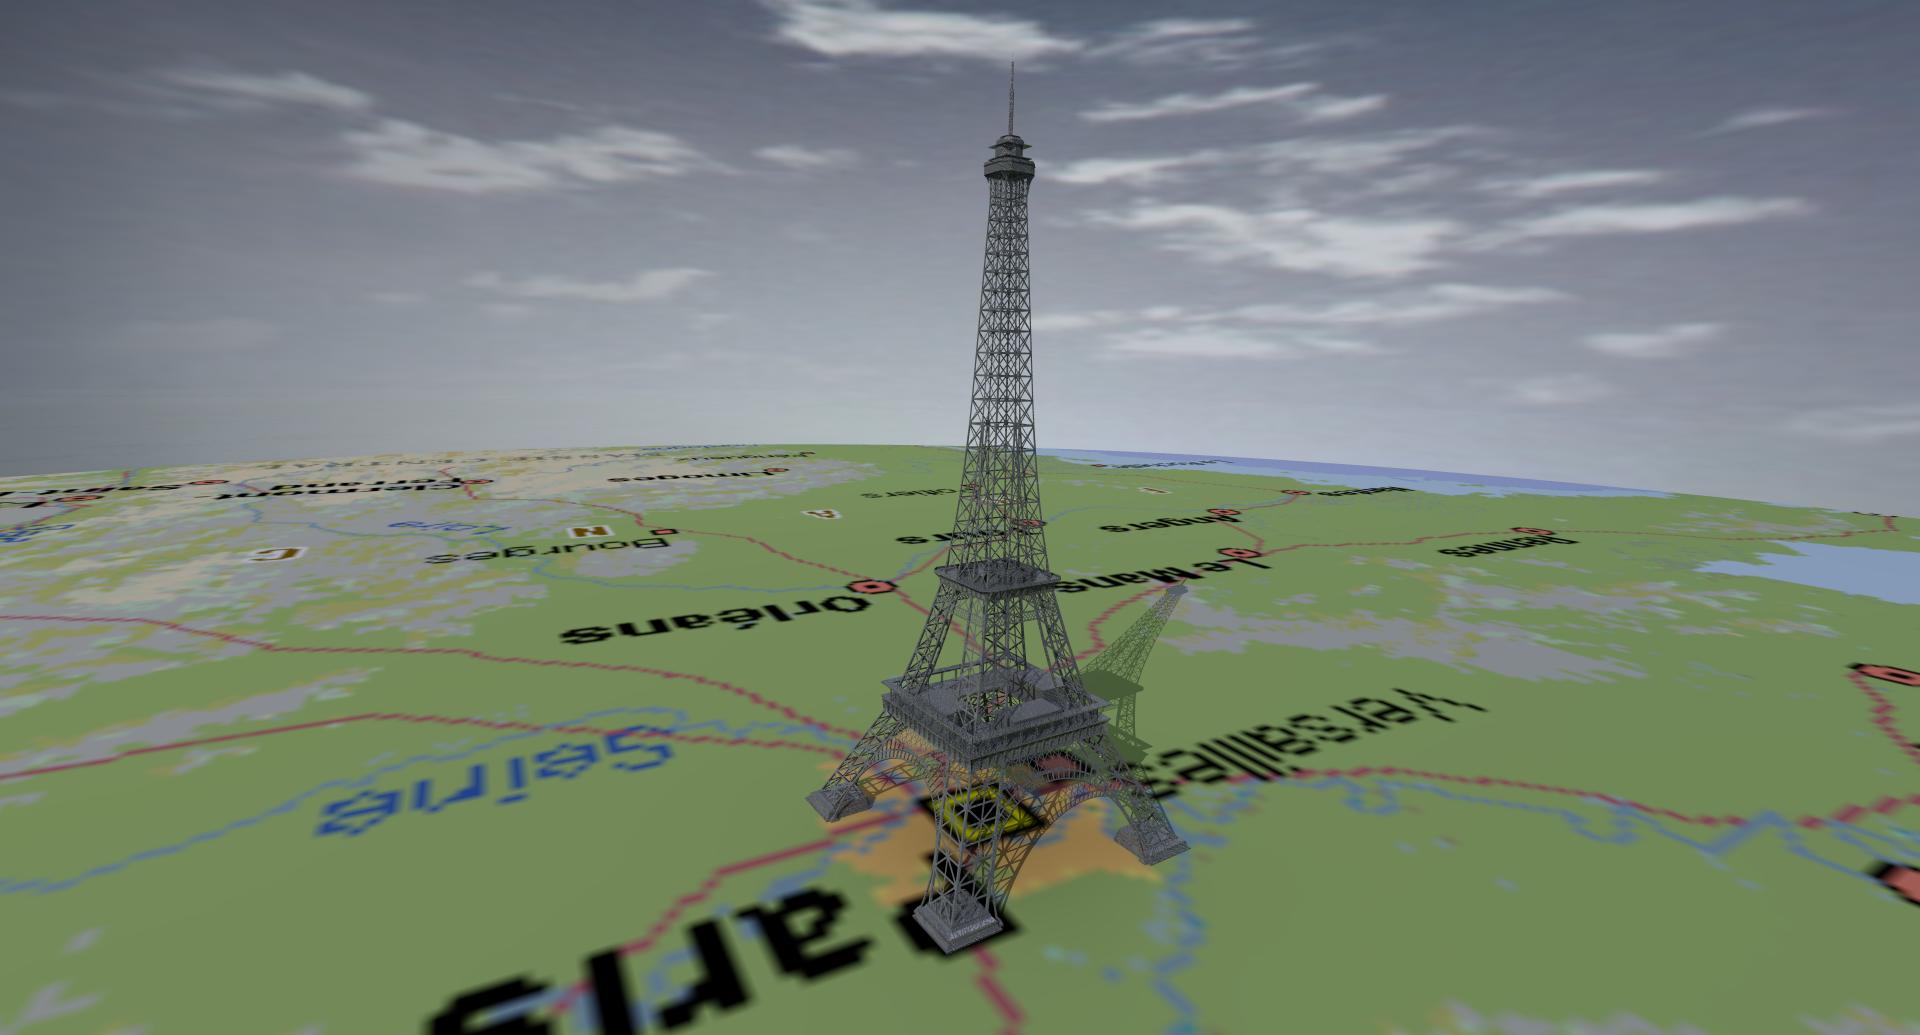 Eiffel_Tower_01.jpg